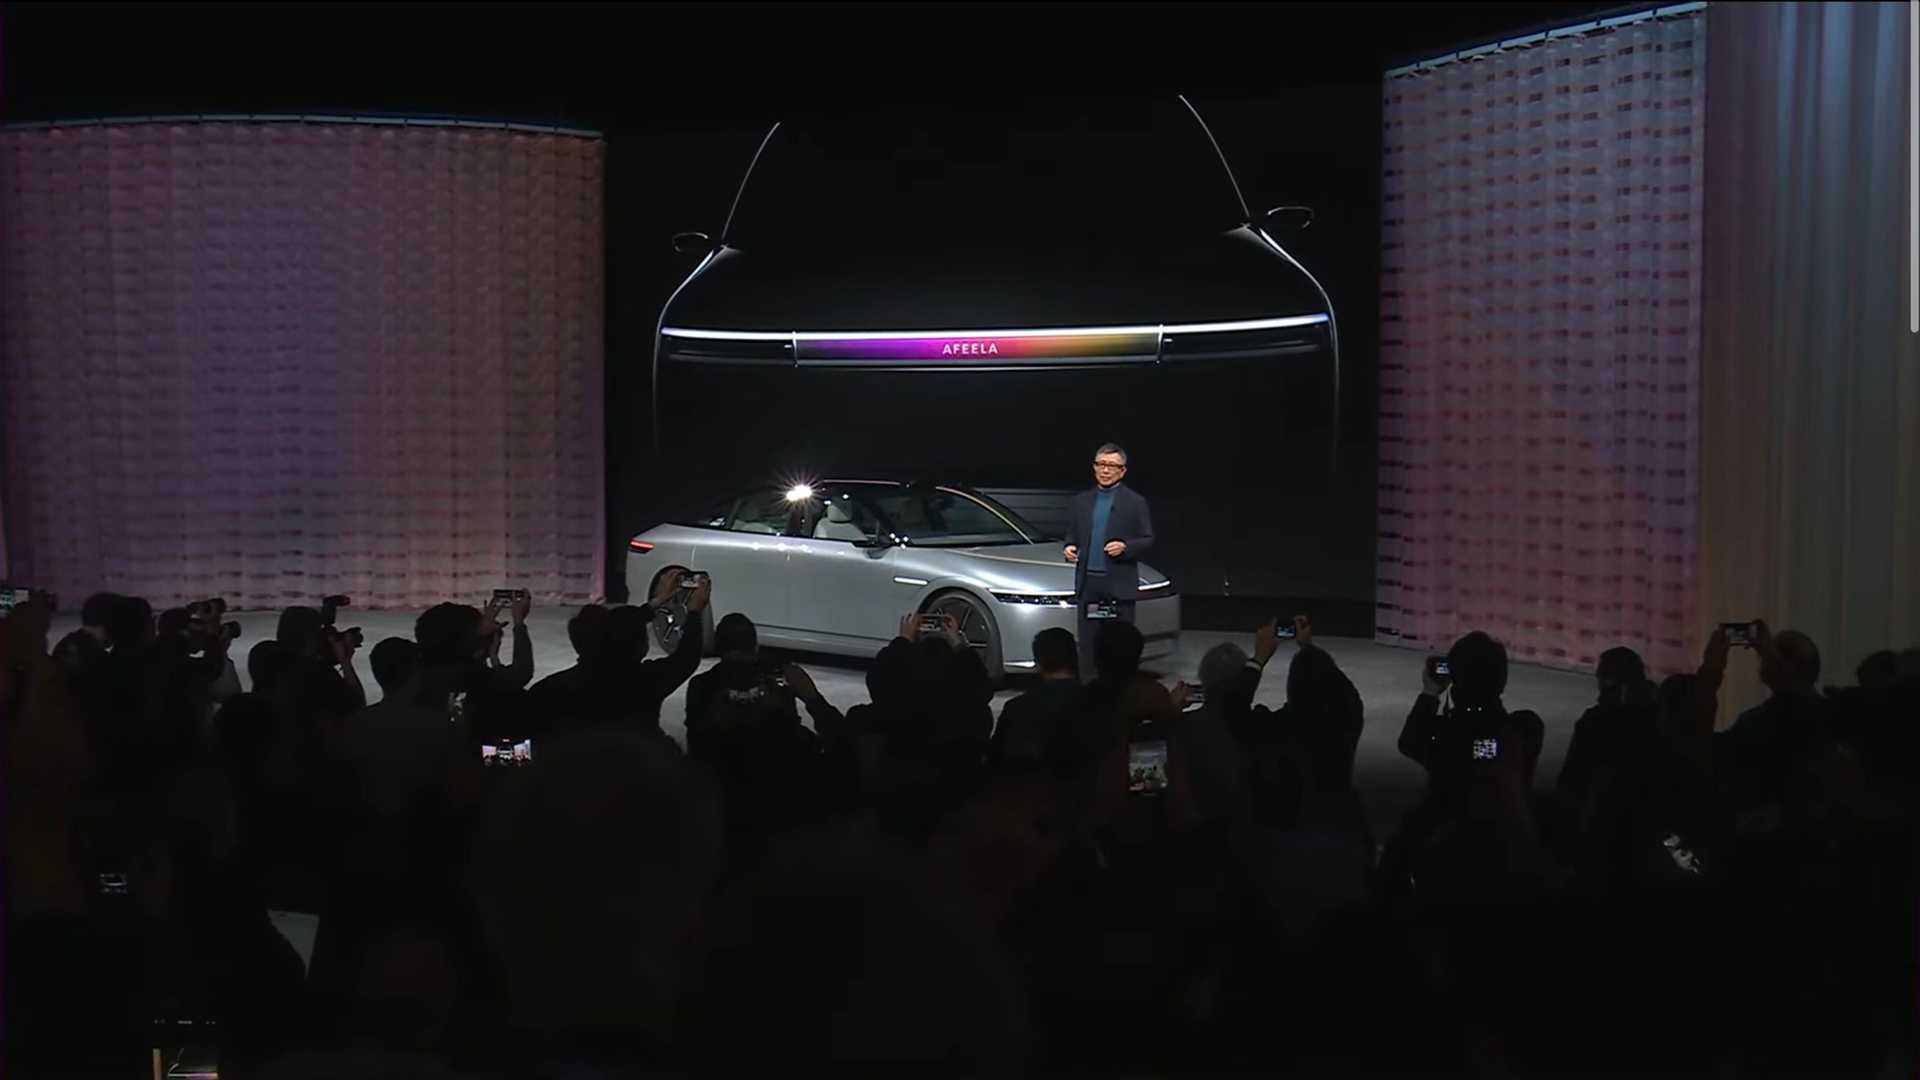 سوني تطلق علامتها التجارية الجديدة للسيارات رسمياً بالتعاون مع هوندا 24